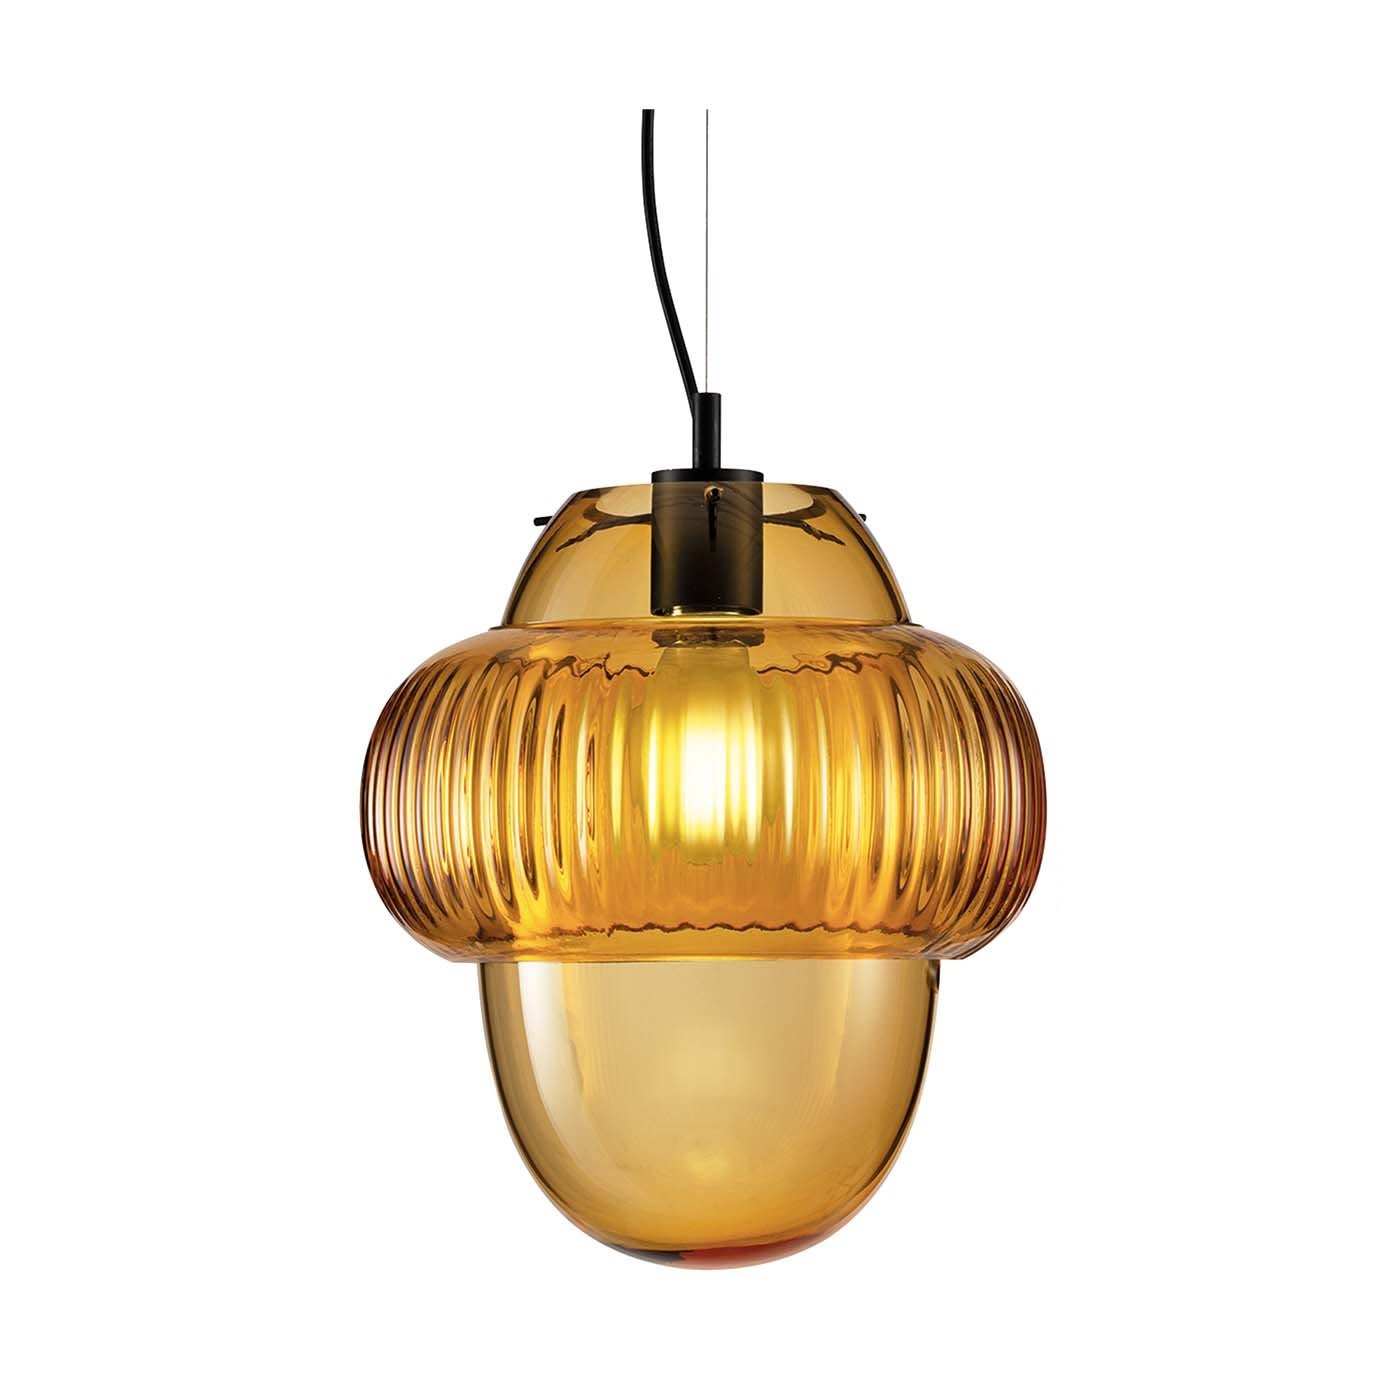 Oround amber glass pendant light - Siru Illuminazione